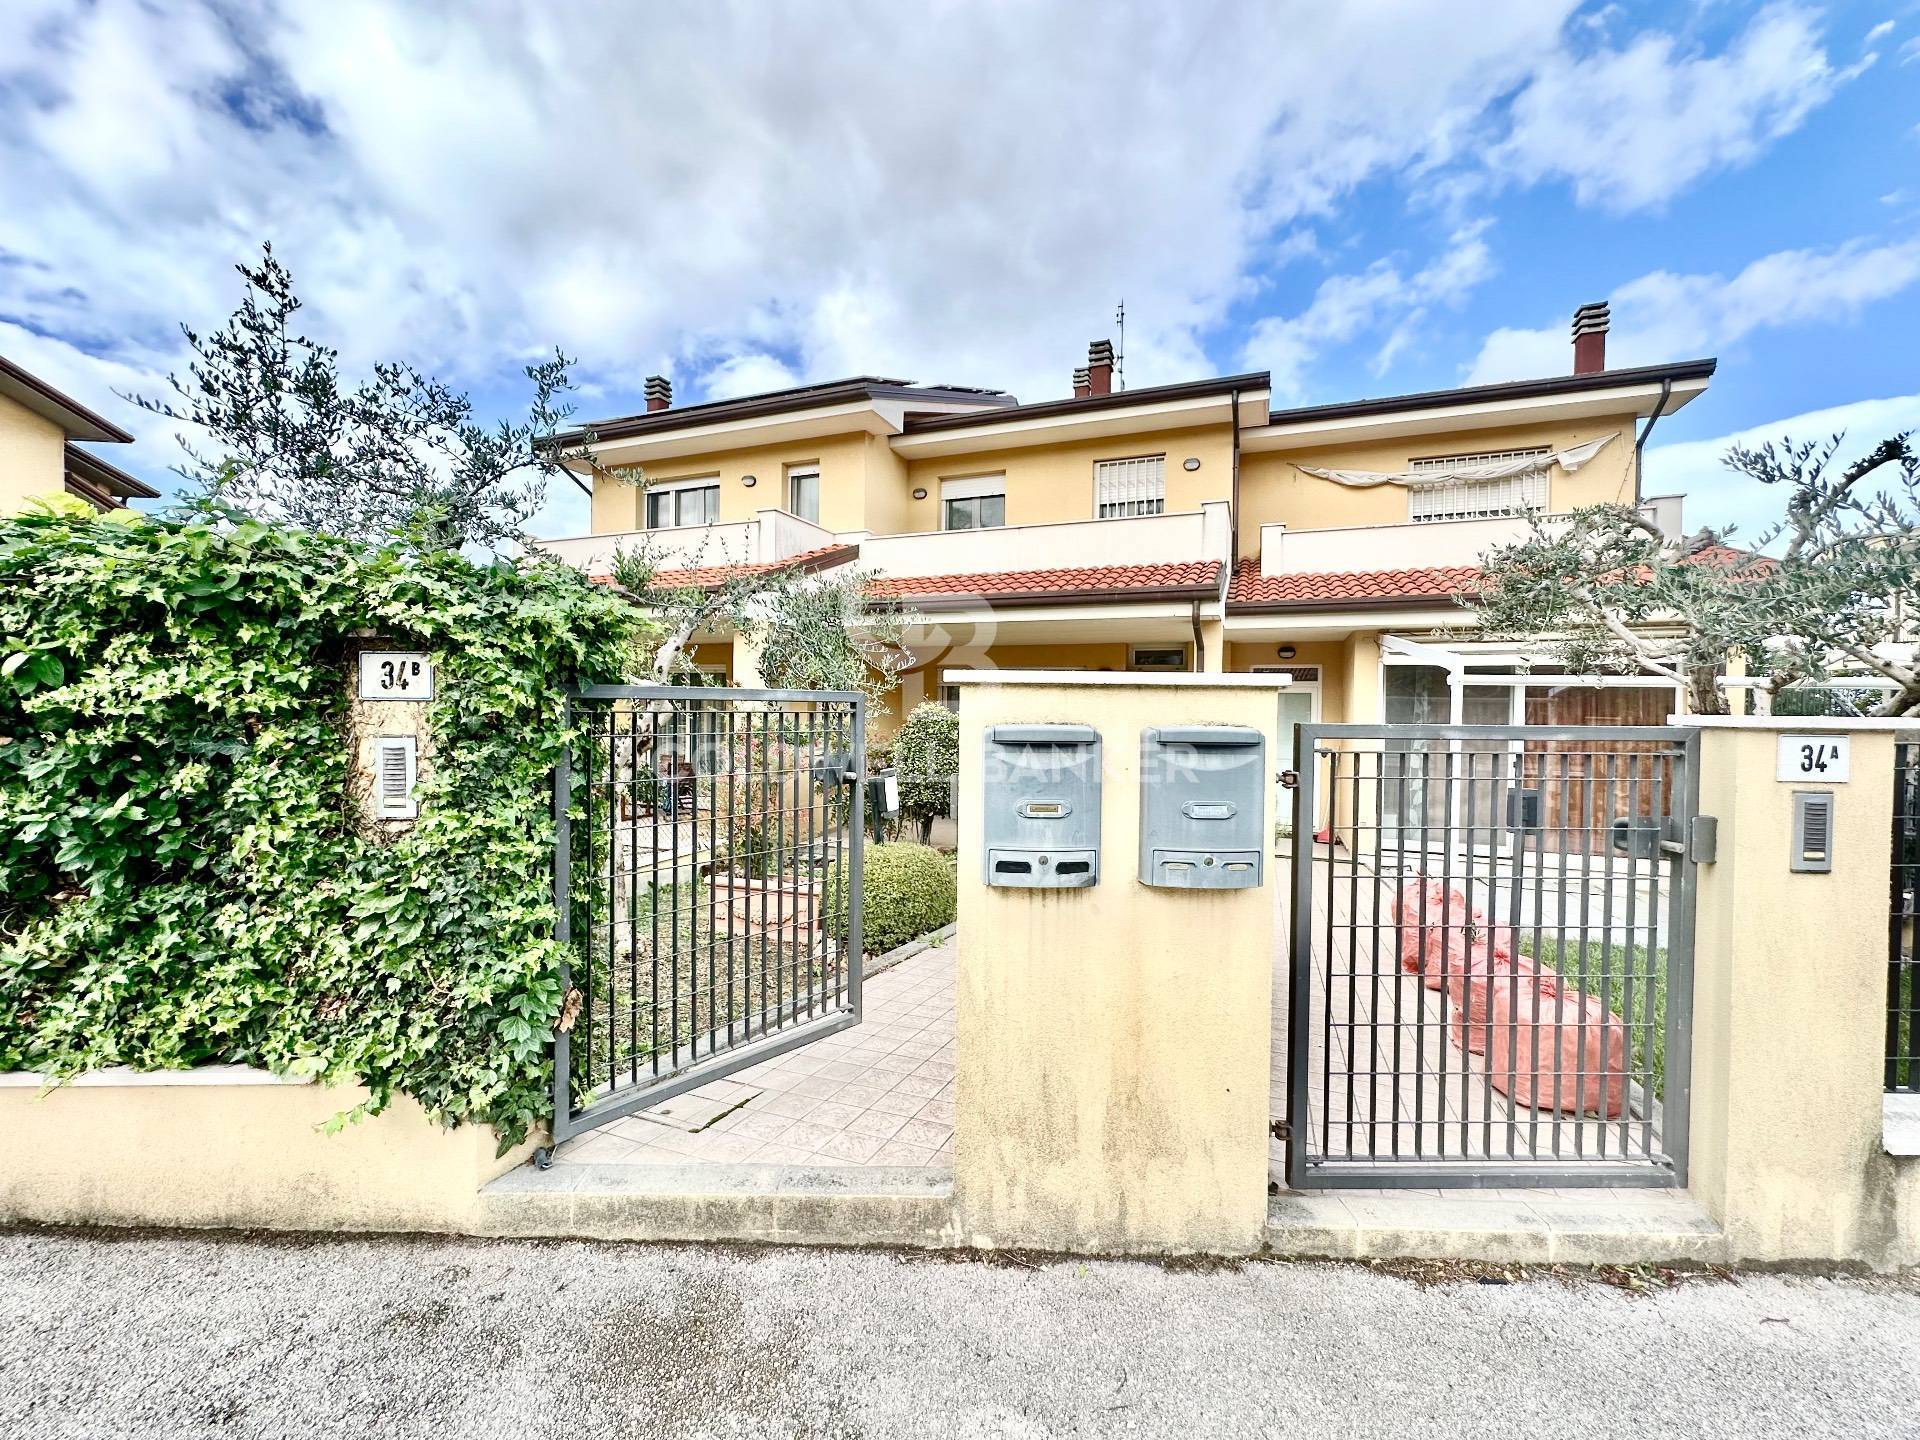 Appartamento in vendita a Coriano, 2 locali, prezzo € 175.000 | PortaleAgenzieImmobiliari.it